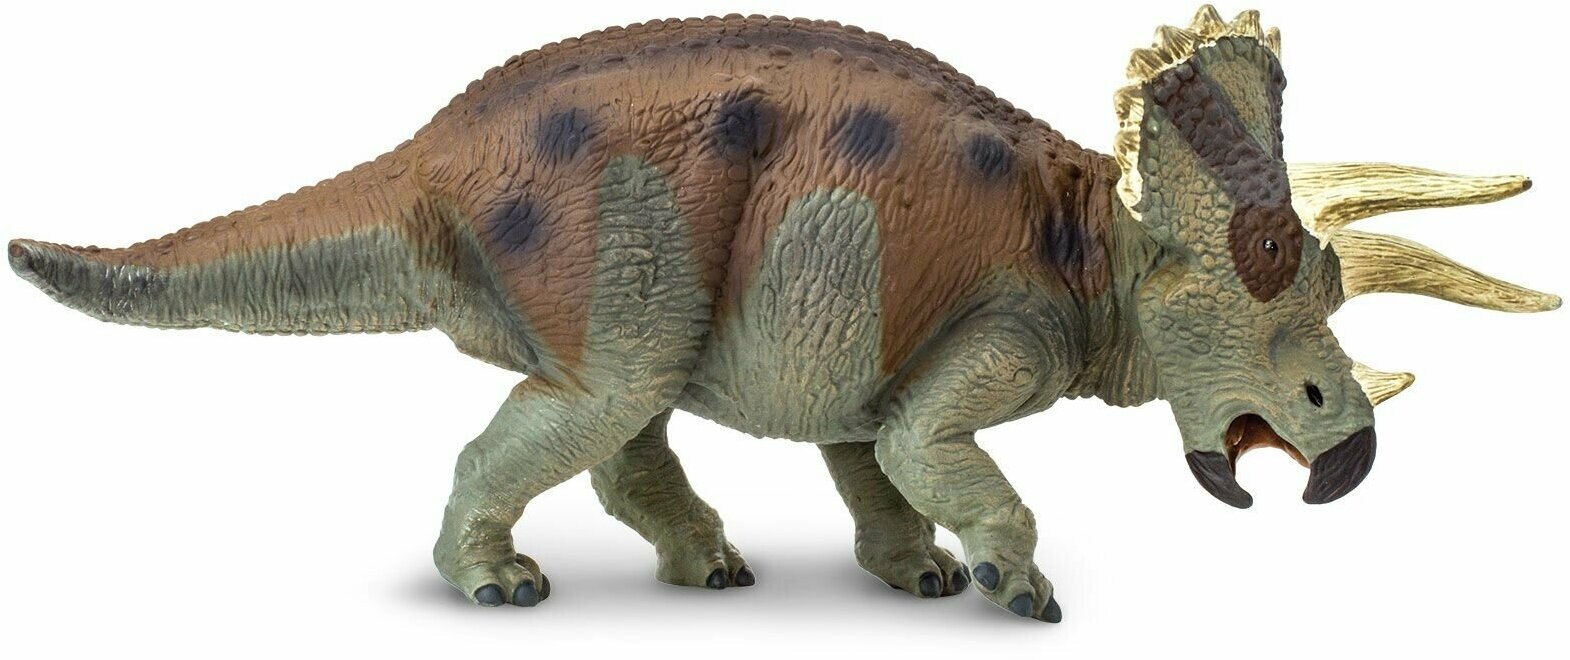 Фигурка животного динозавра Safari Ltd Трицератопс XL, для детей, игрушка коллекционная, 30005